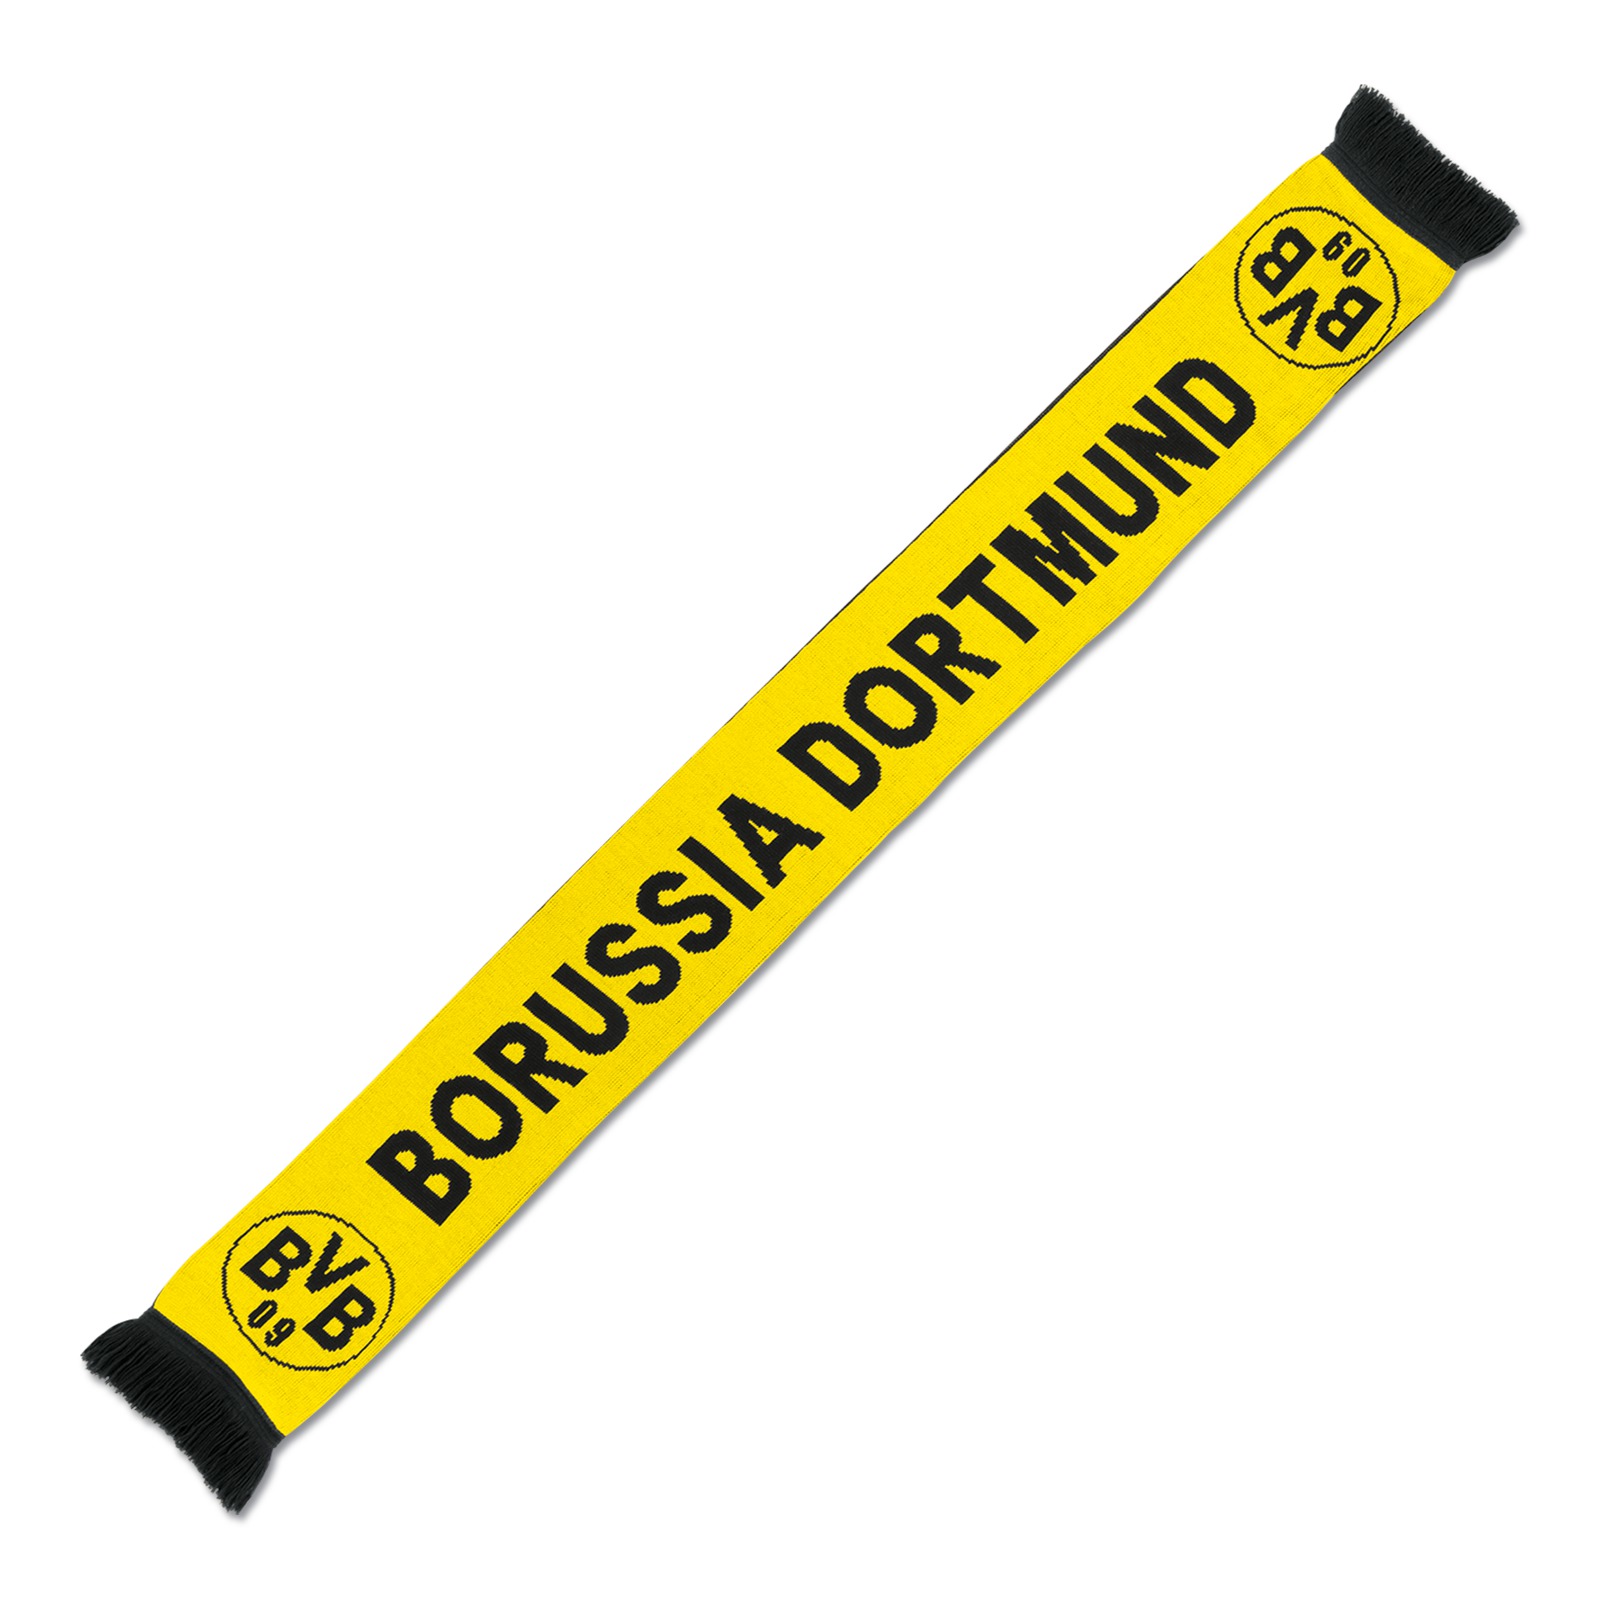 Unisex Borussia Dortmund Taza con diseño de bufanda Negro/Amarillo